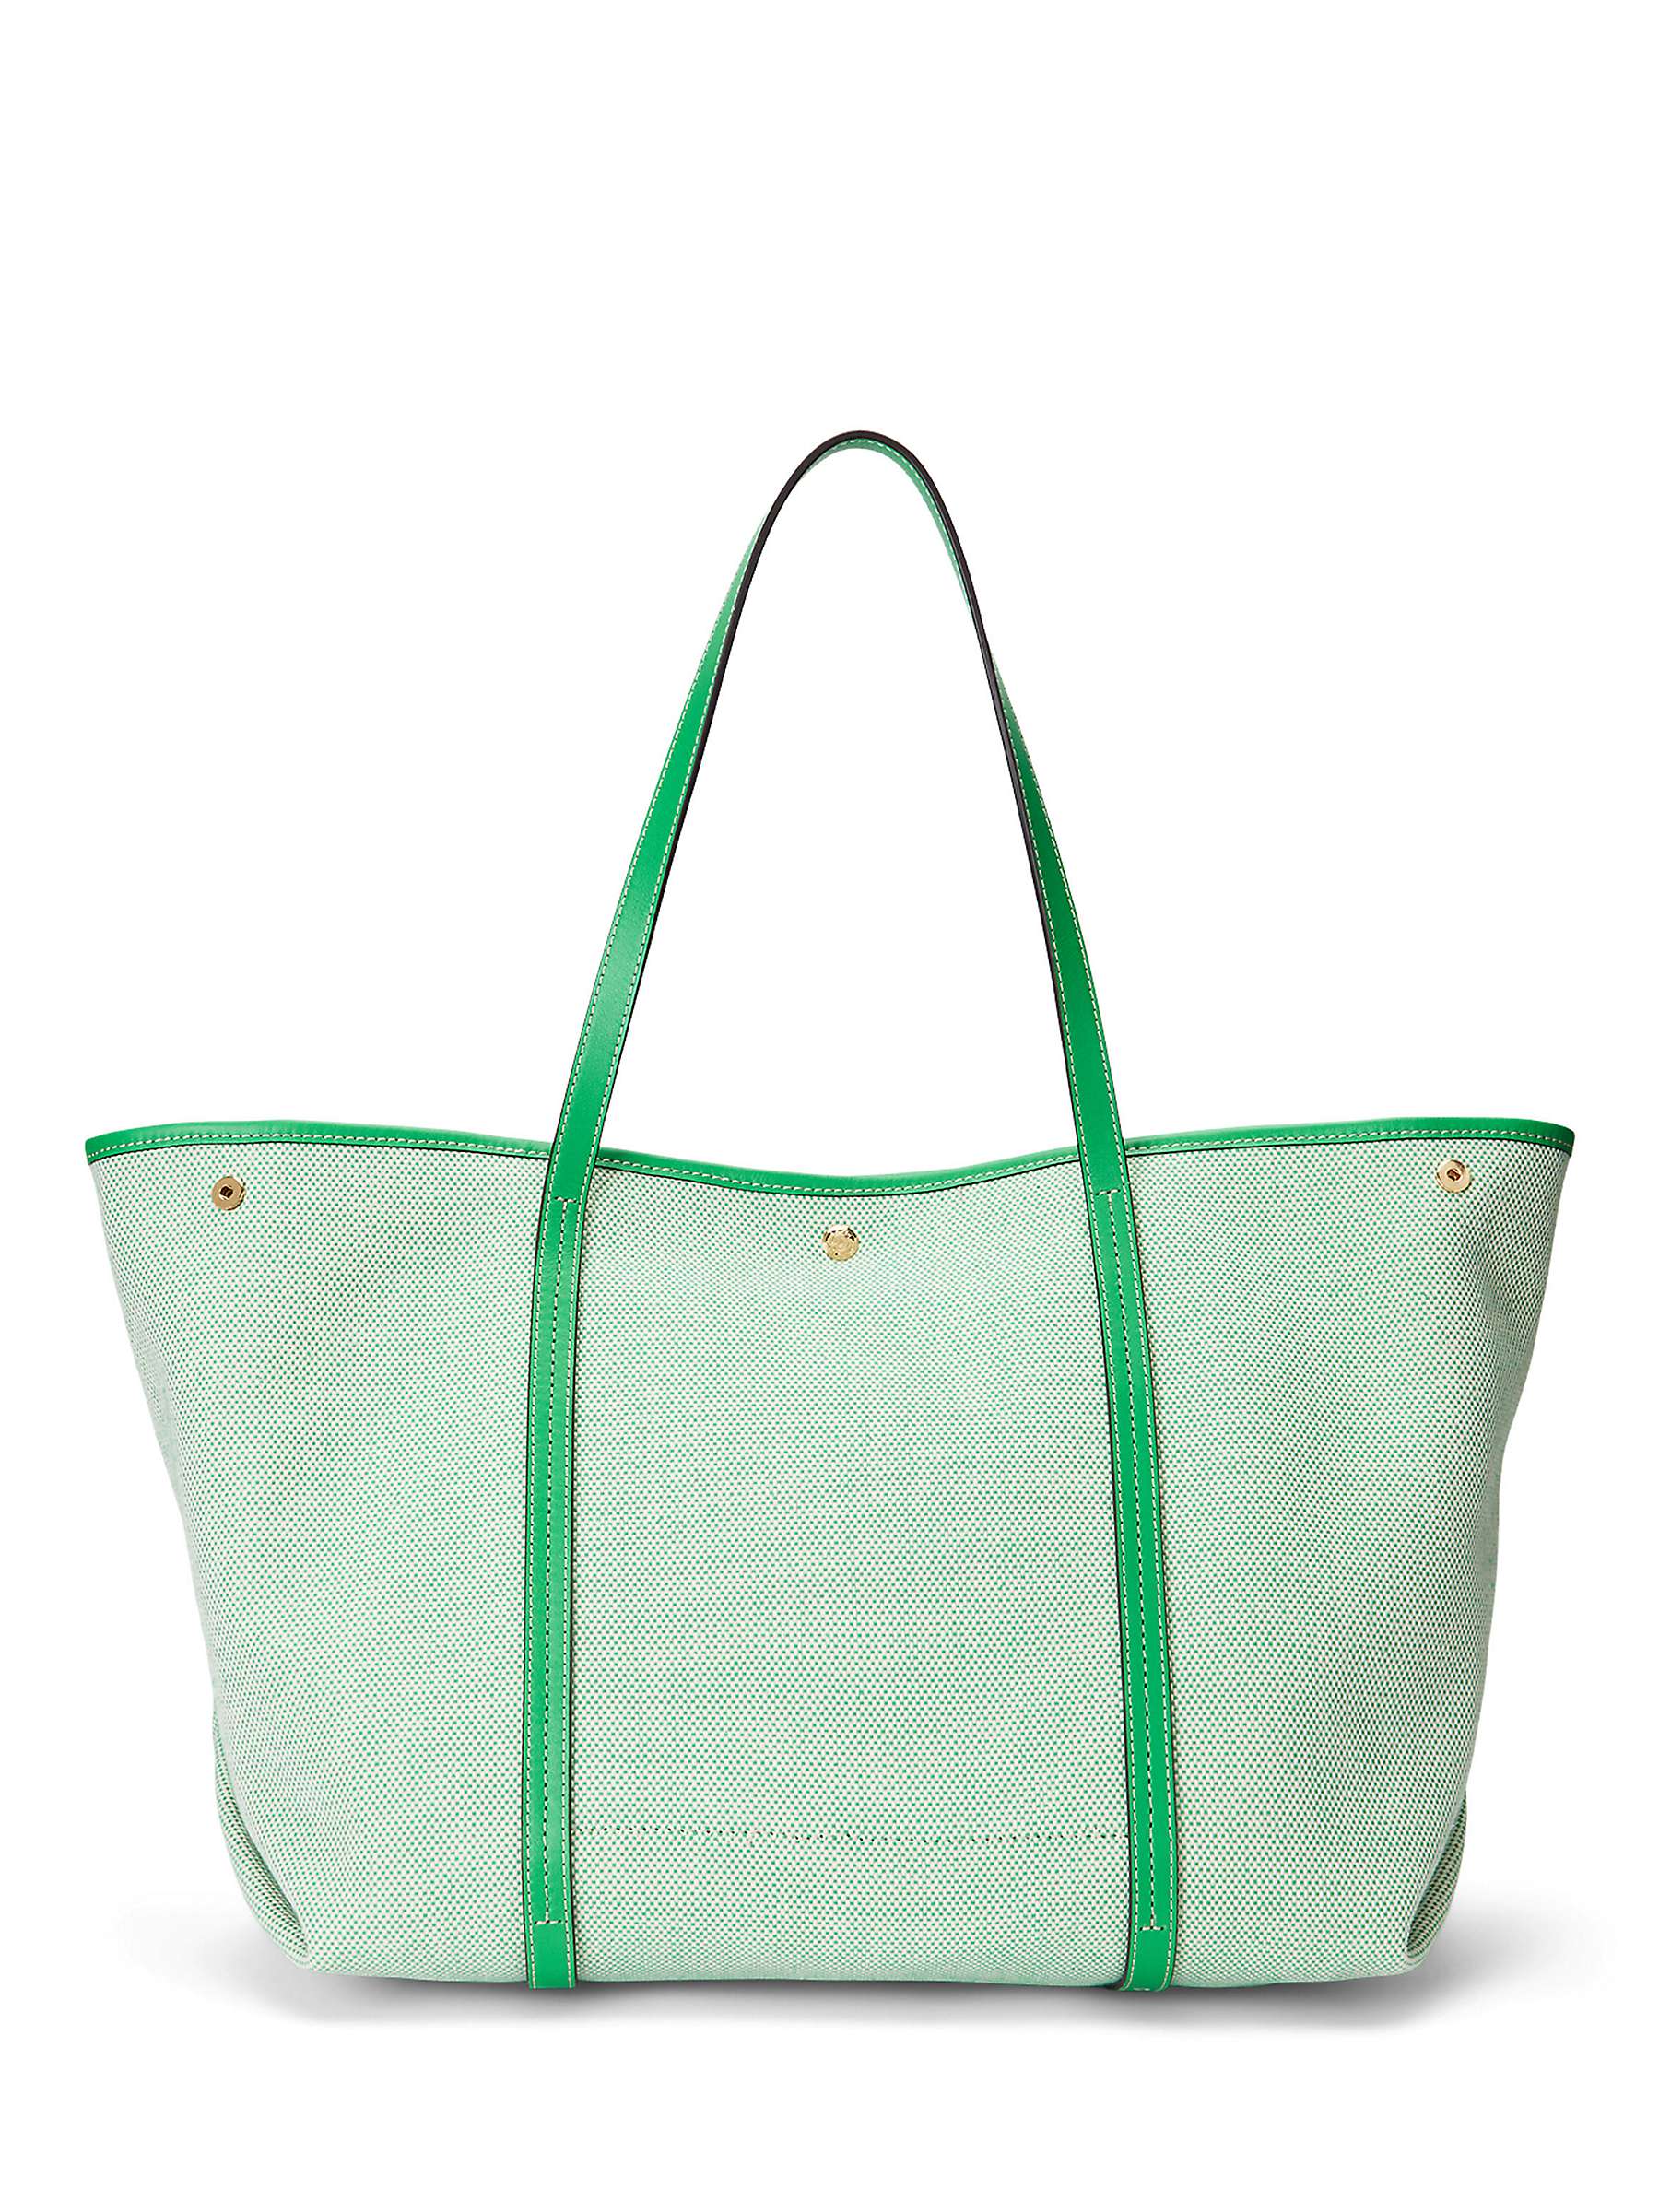 Buy Lauren Ralph Lauren Emerie Tote Bag Online at johnlewis.com